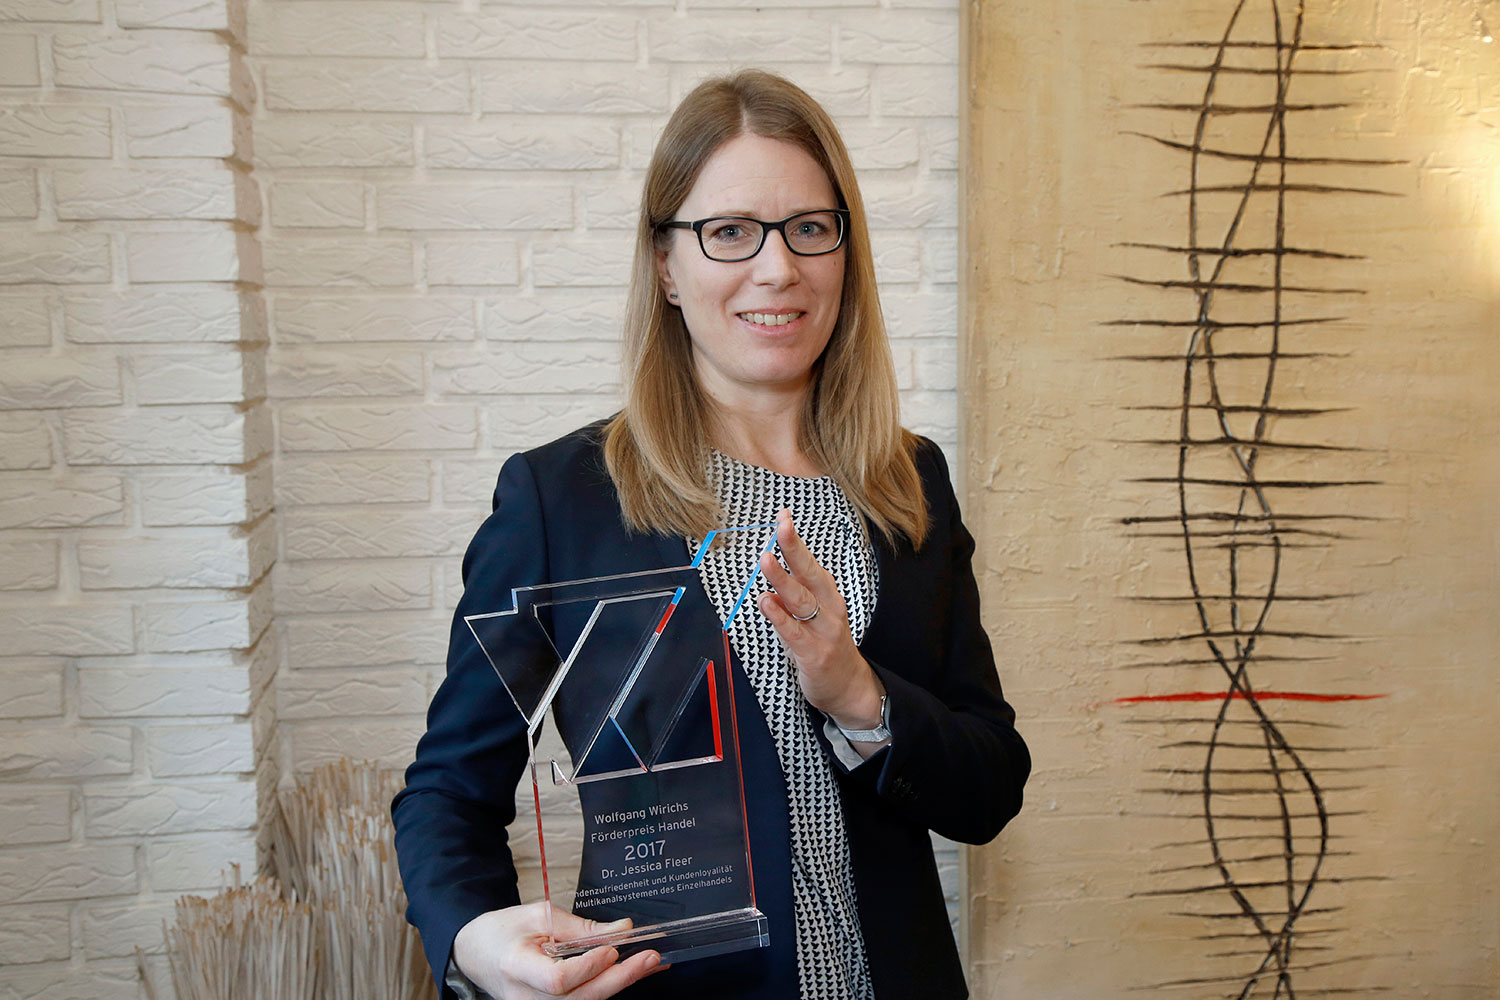 Die diesjährige Preisträgerin des Wolfgang wirichs förderpreis Handel Dr. Susanne Fleer vom Institut für Marketing. bildnachweis Wolfgang Wirichs Stiftung